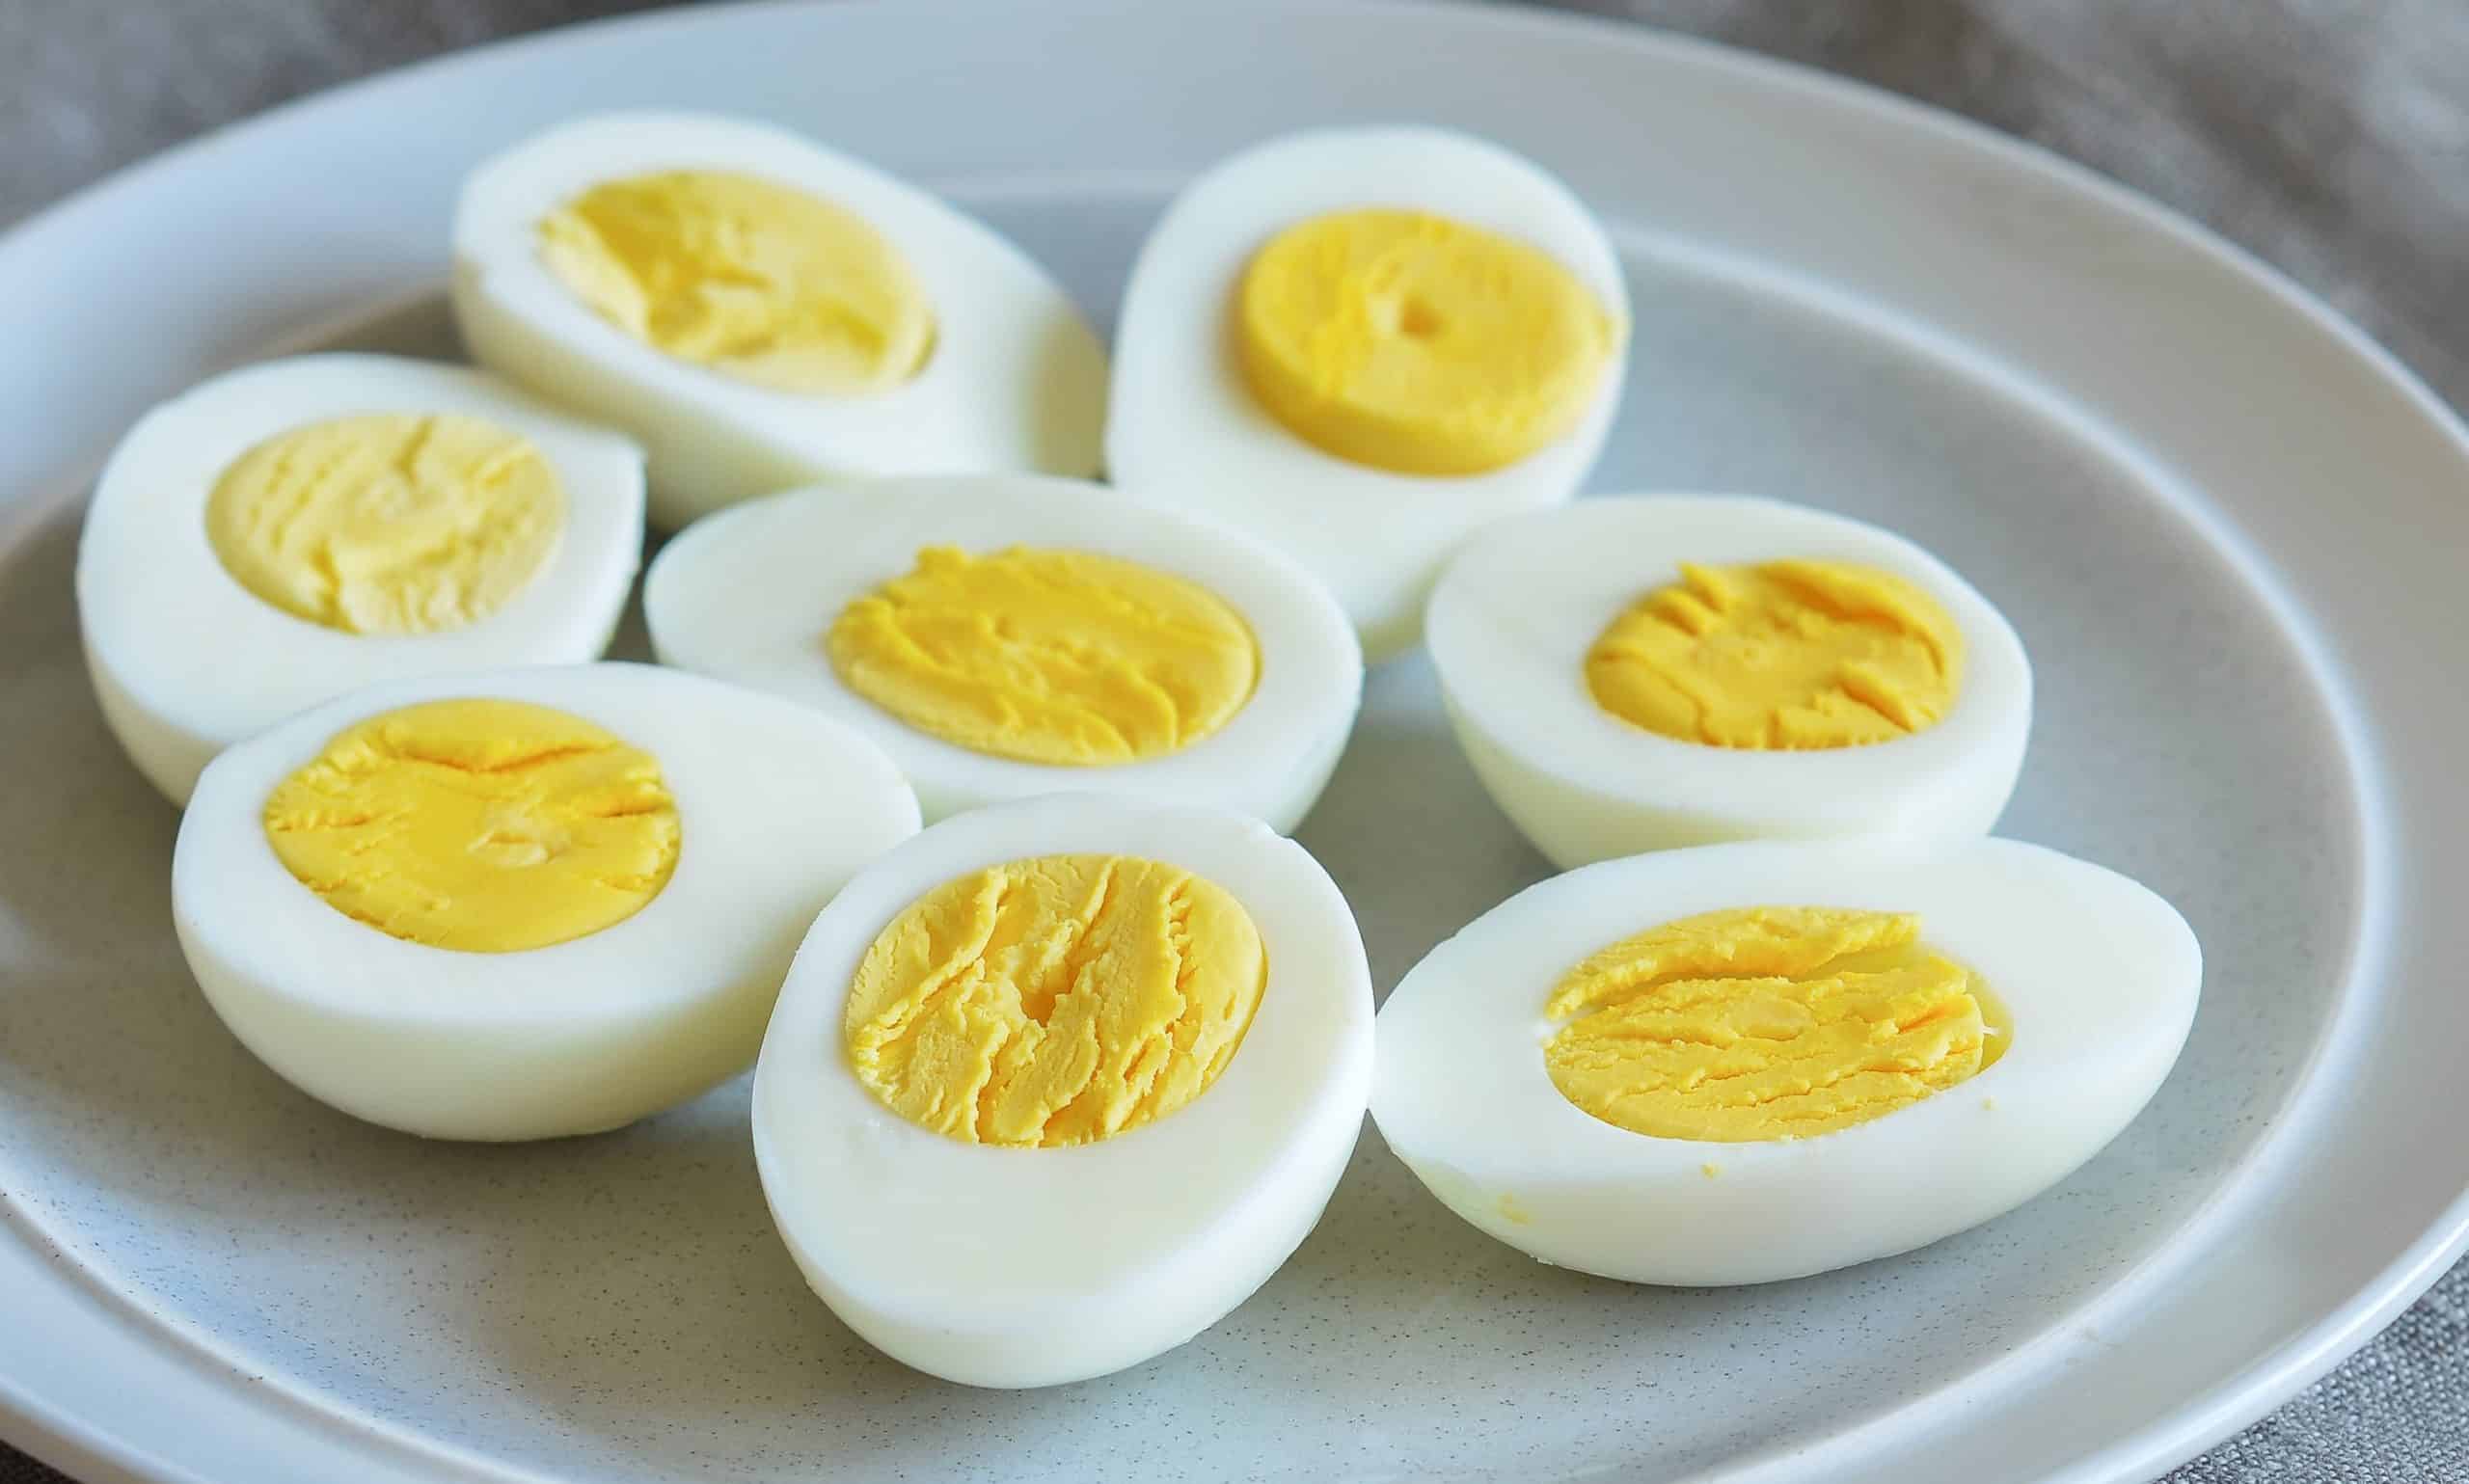 boiled egg diet plan